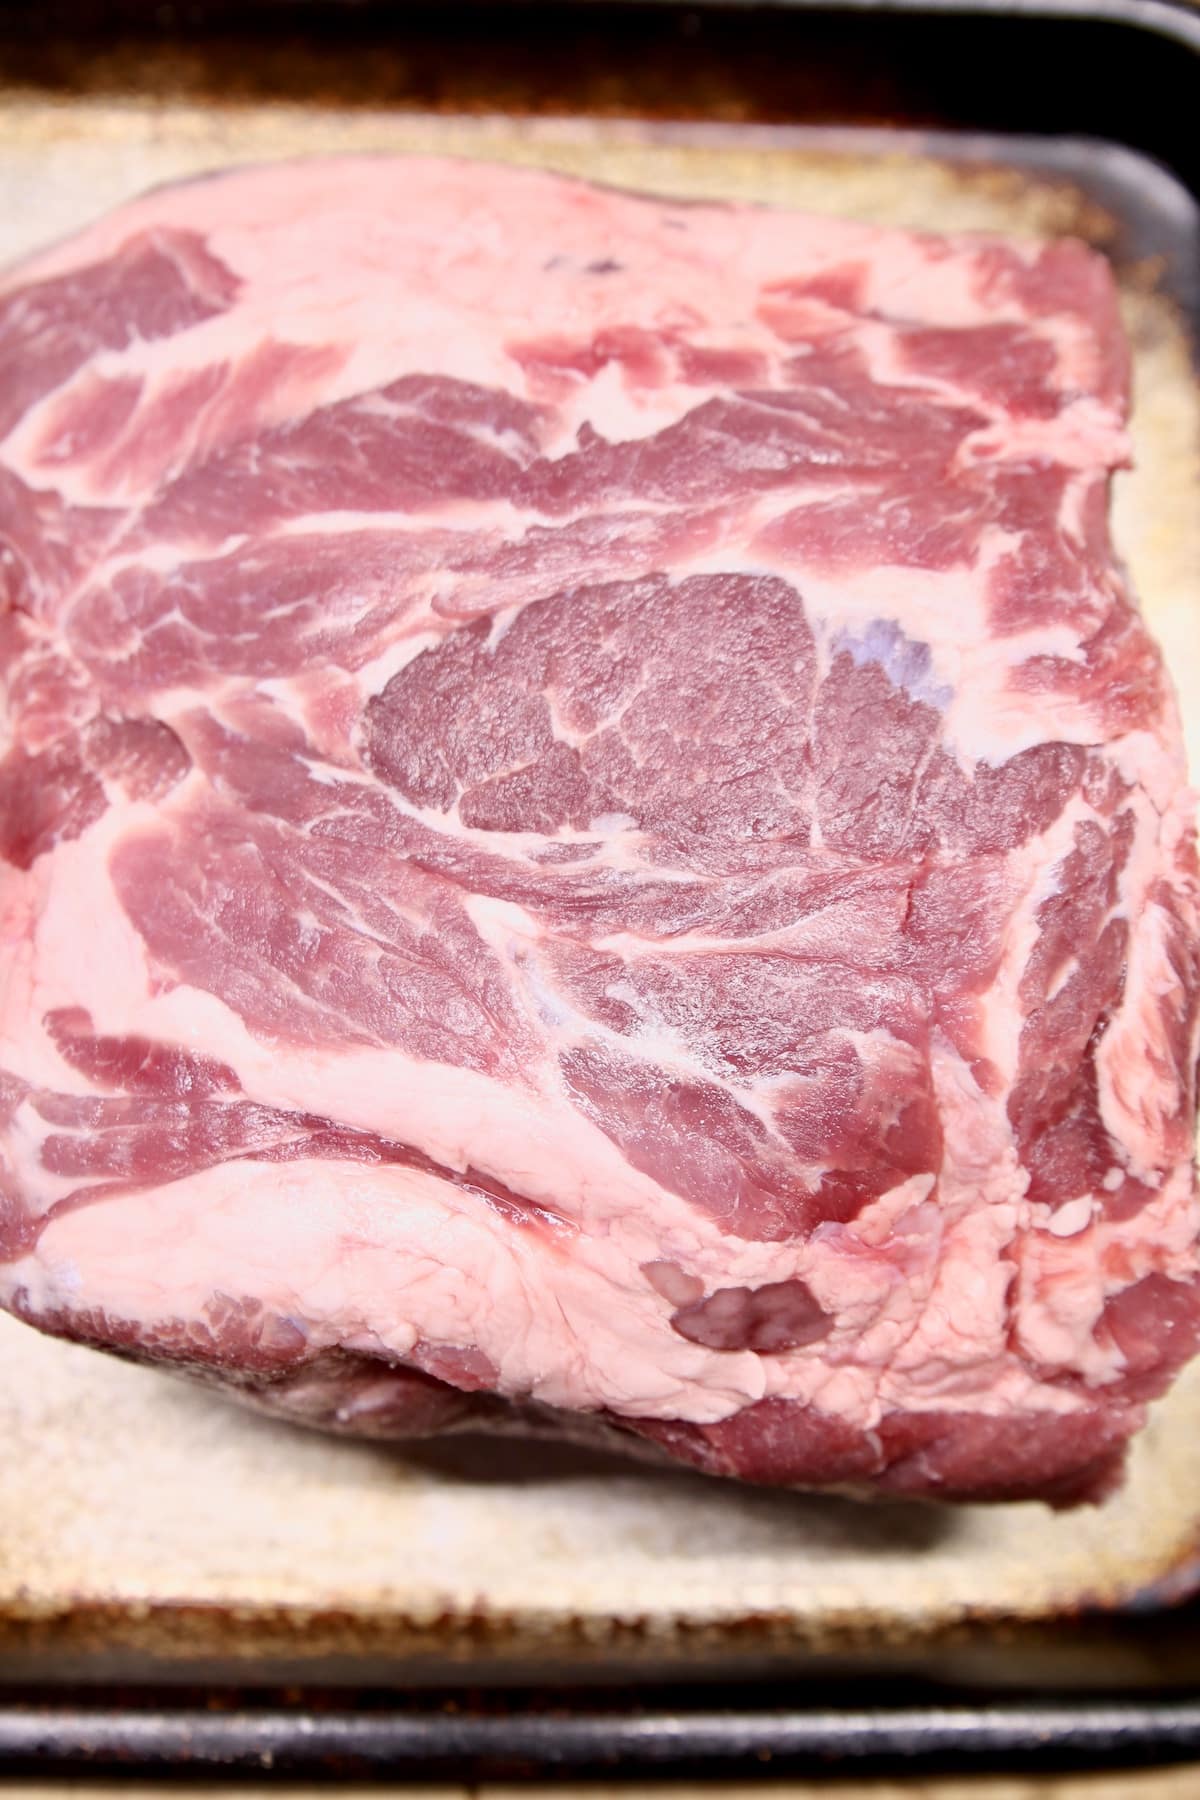 Raw pork butt on a sheet pan.